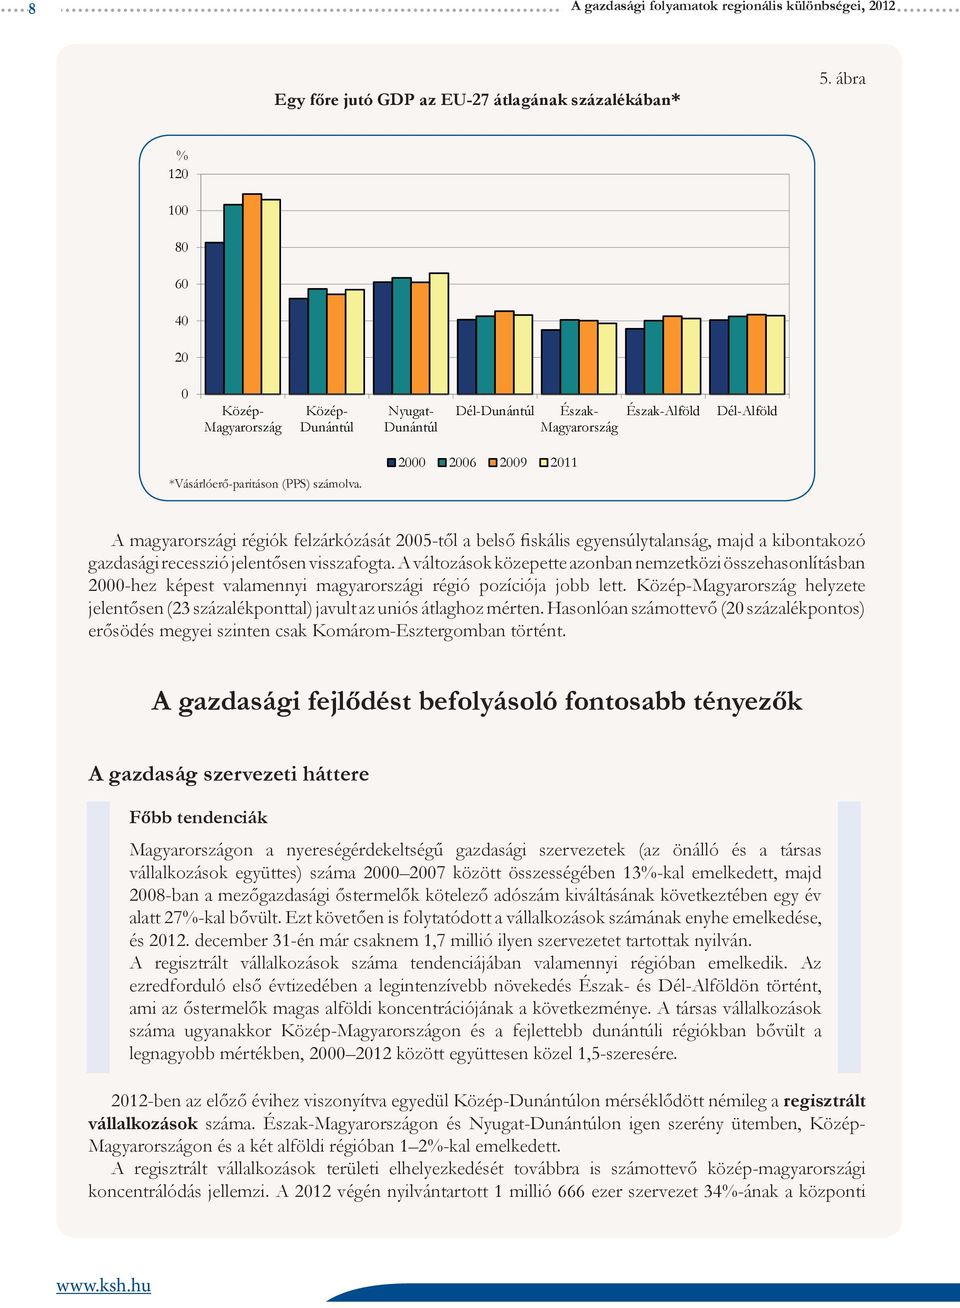 2000 2006 2009 2011 A magyarországi régiók felzárkózását 2005-től a belső fiskális egyensúlytalanság, majd a kibontakozó gazdasági recesszió jelentősen visszafogta.